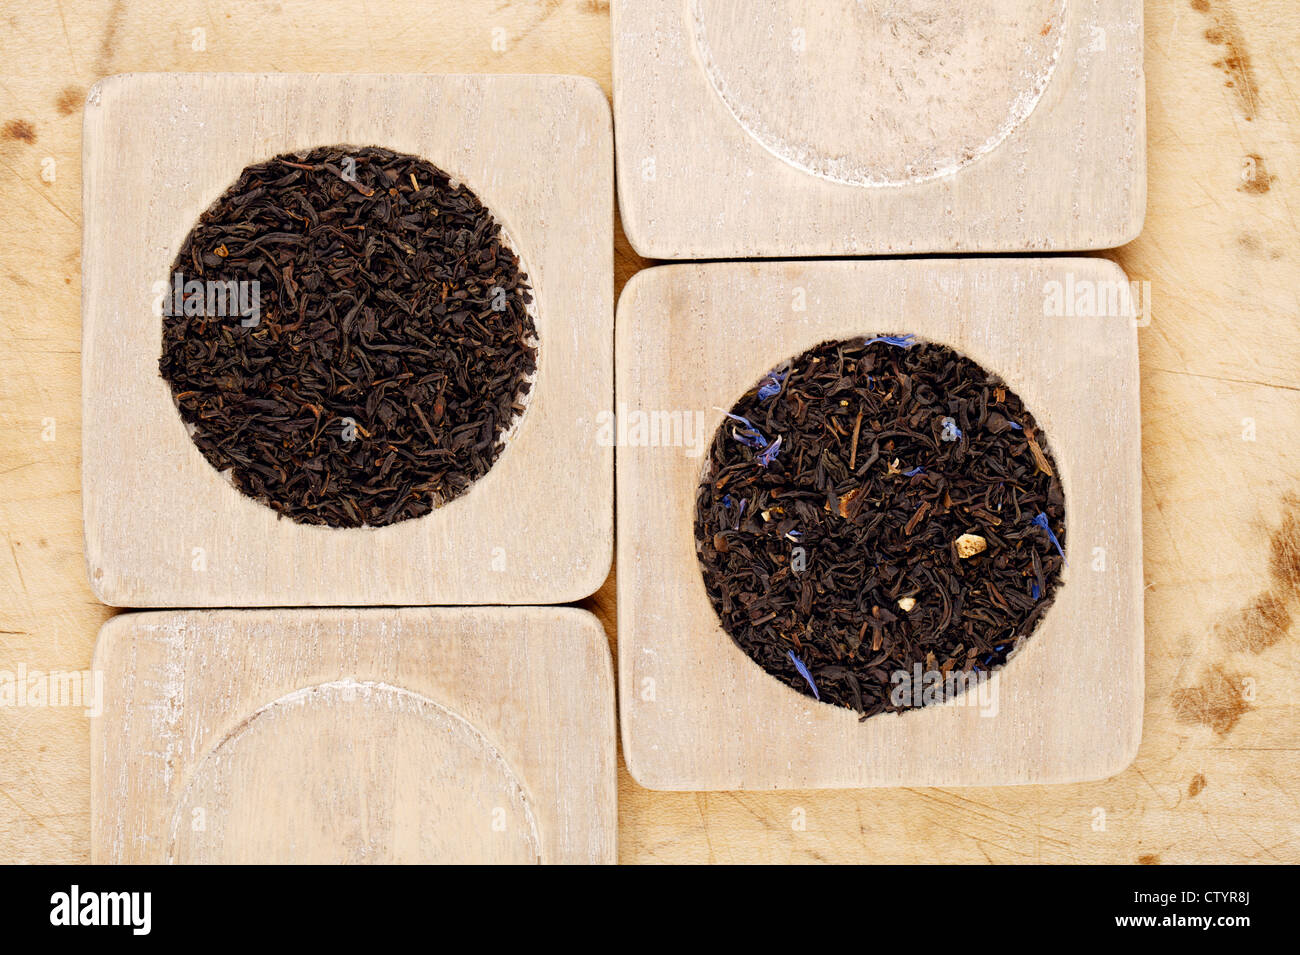 Earl Grey y Lady Grey Negros Aflojan las hojas de té en madera Foto de stock